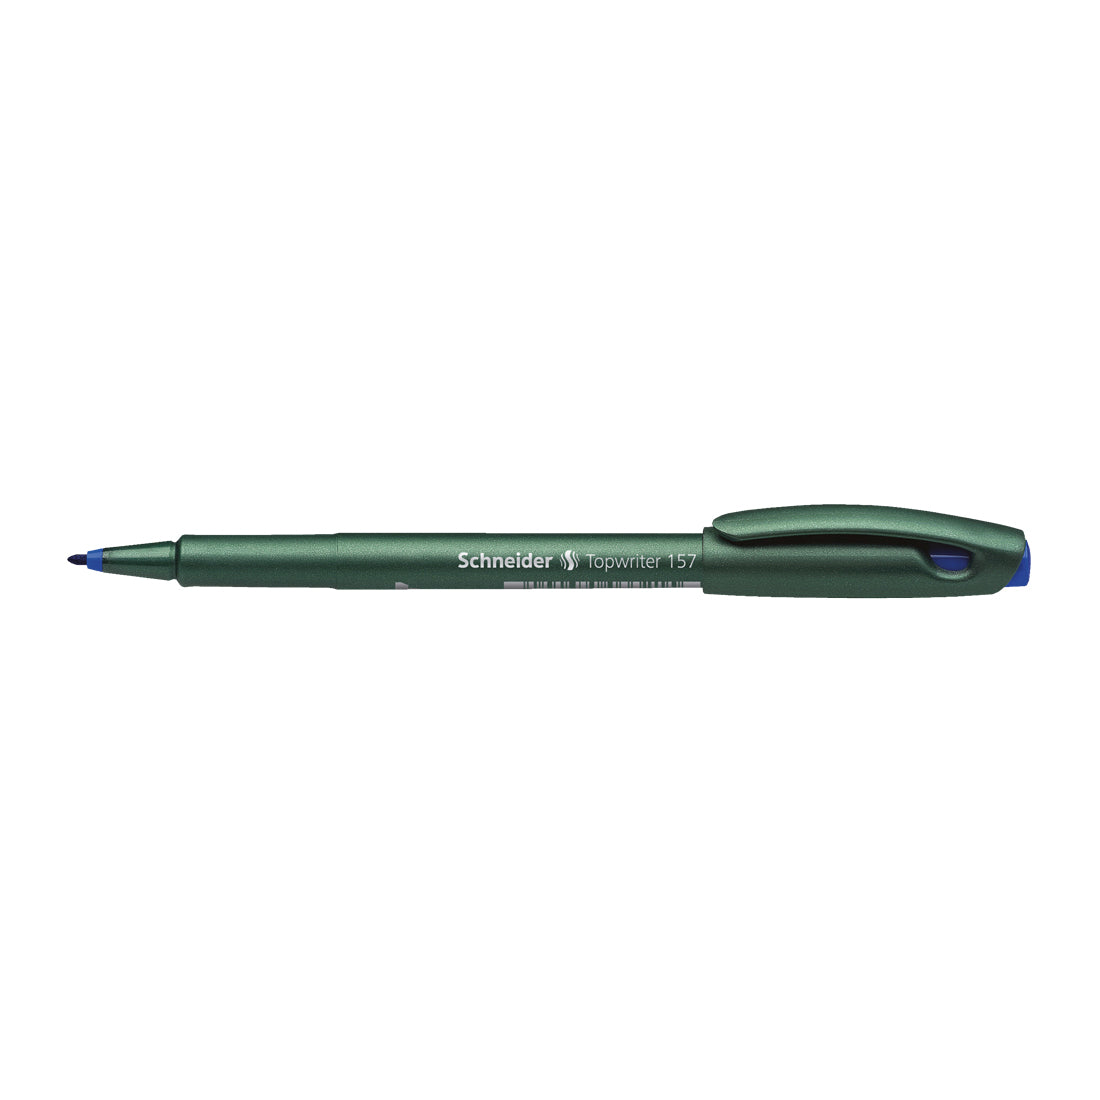 Topwriter 157 Fibre Pen 0.8mm, Box of 10#ink-color_blue